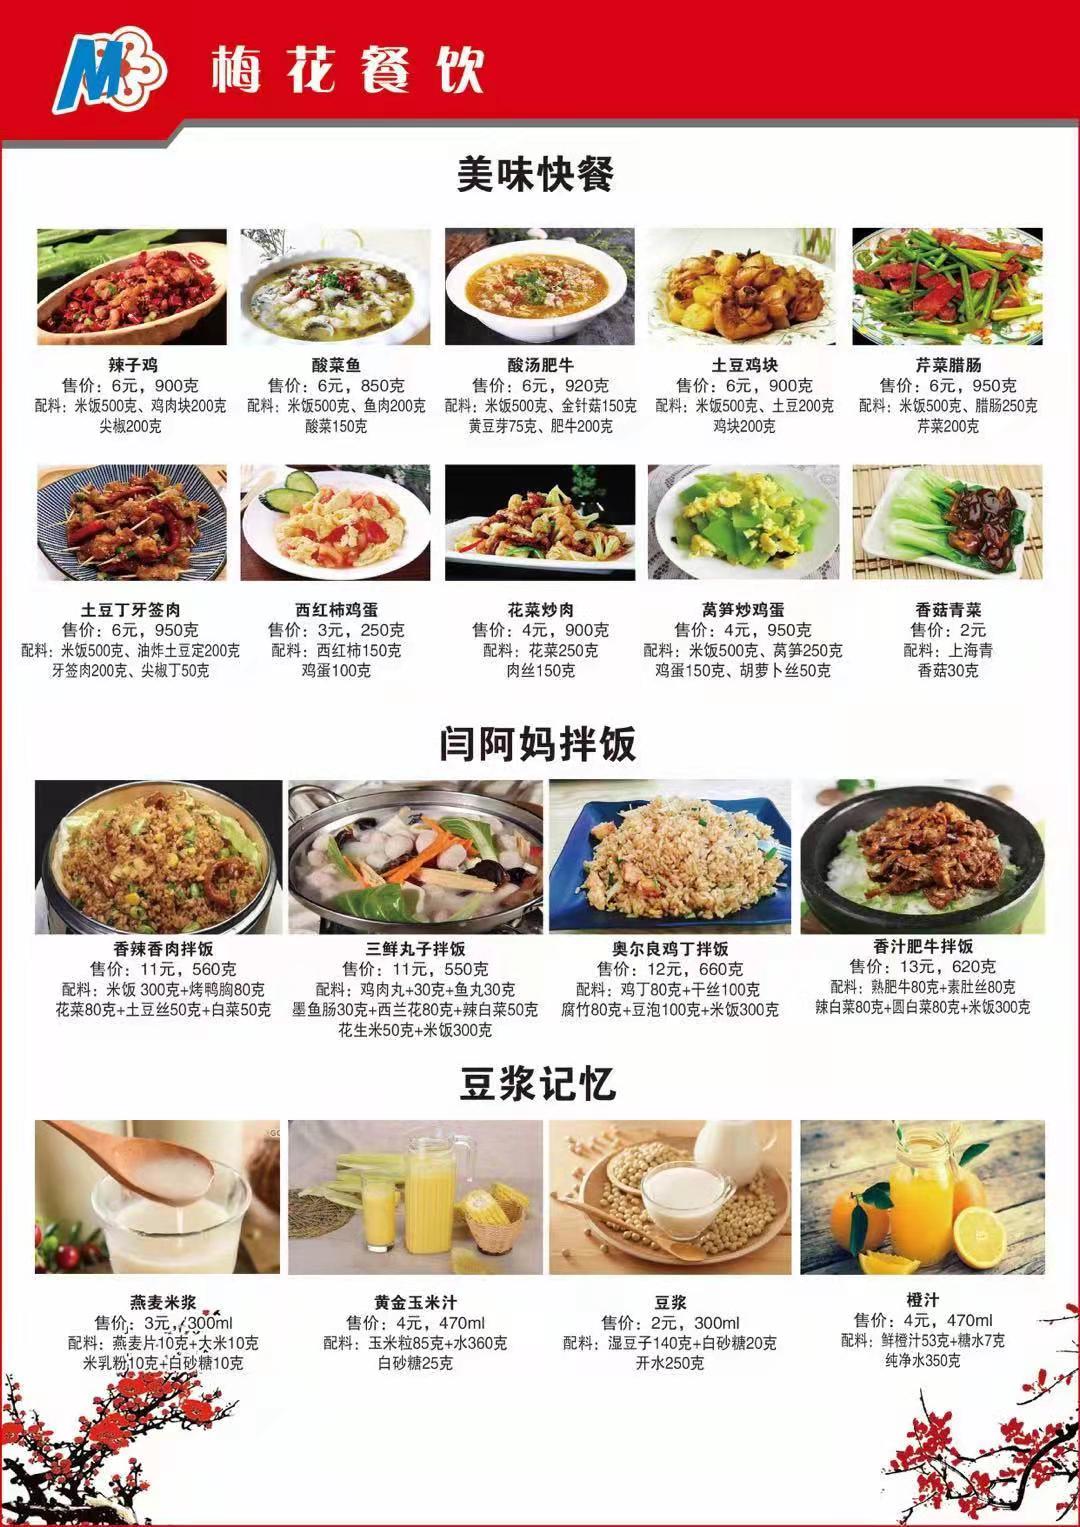 学生餐如何拴住学生们的胃 记者探访武汉部分中小学食堂-荆楚网-湖北日报网